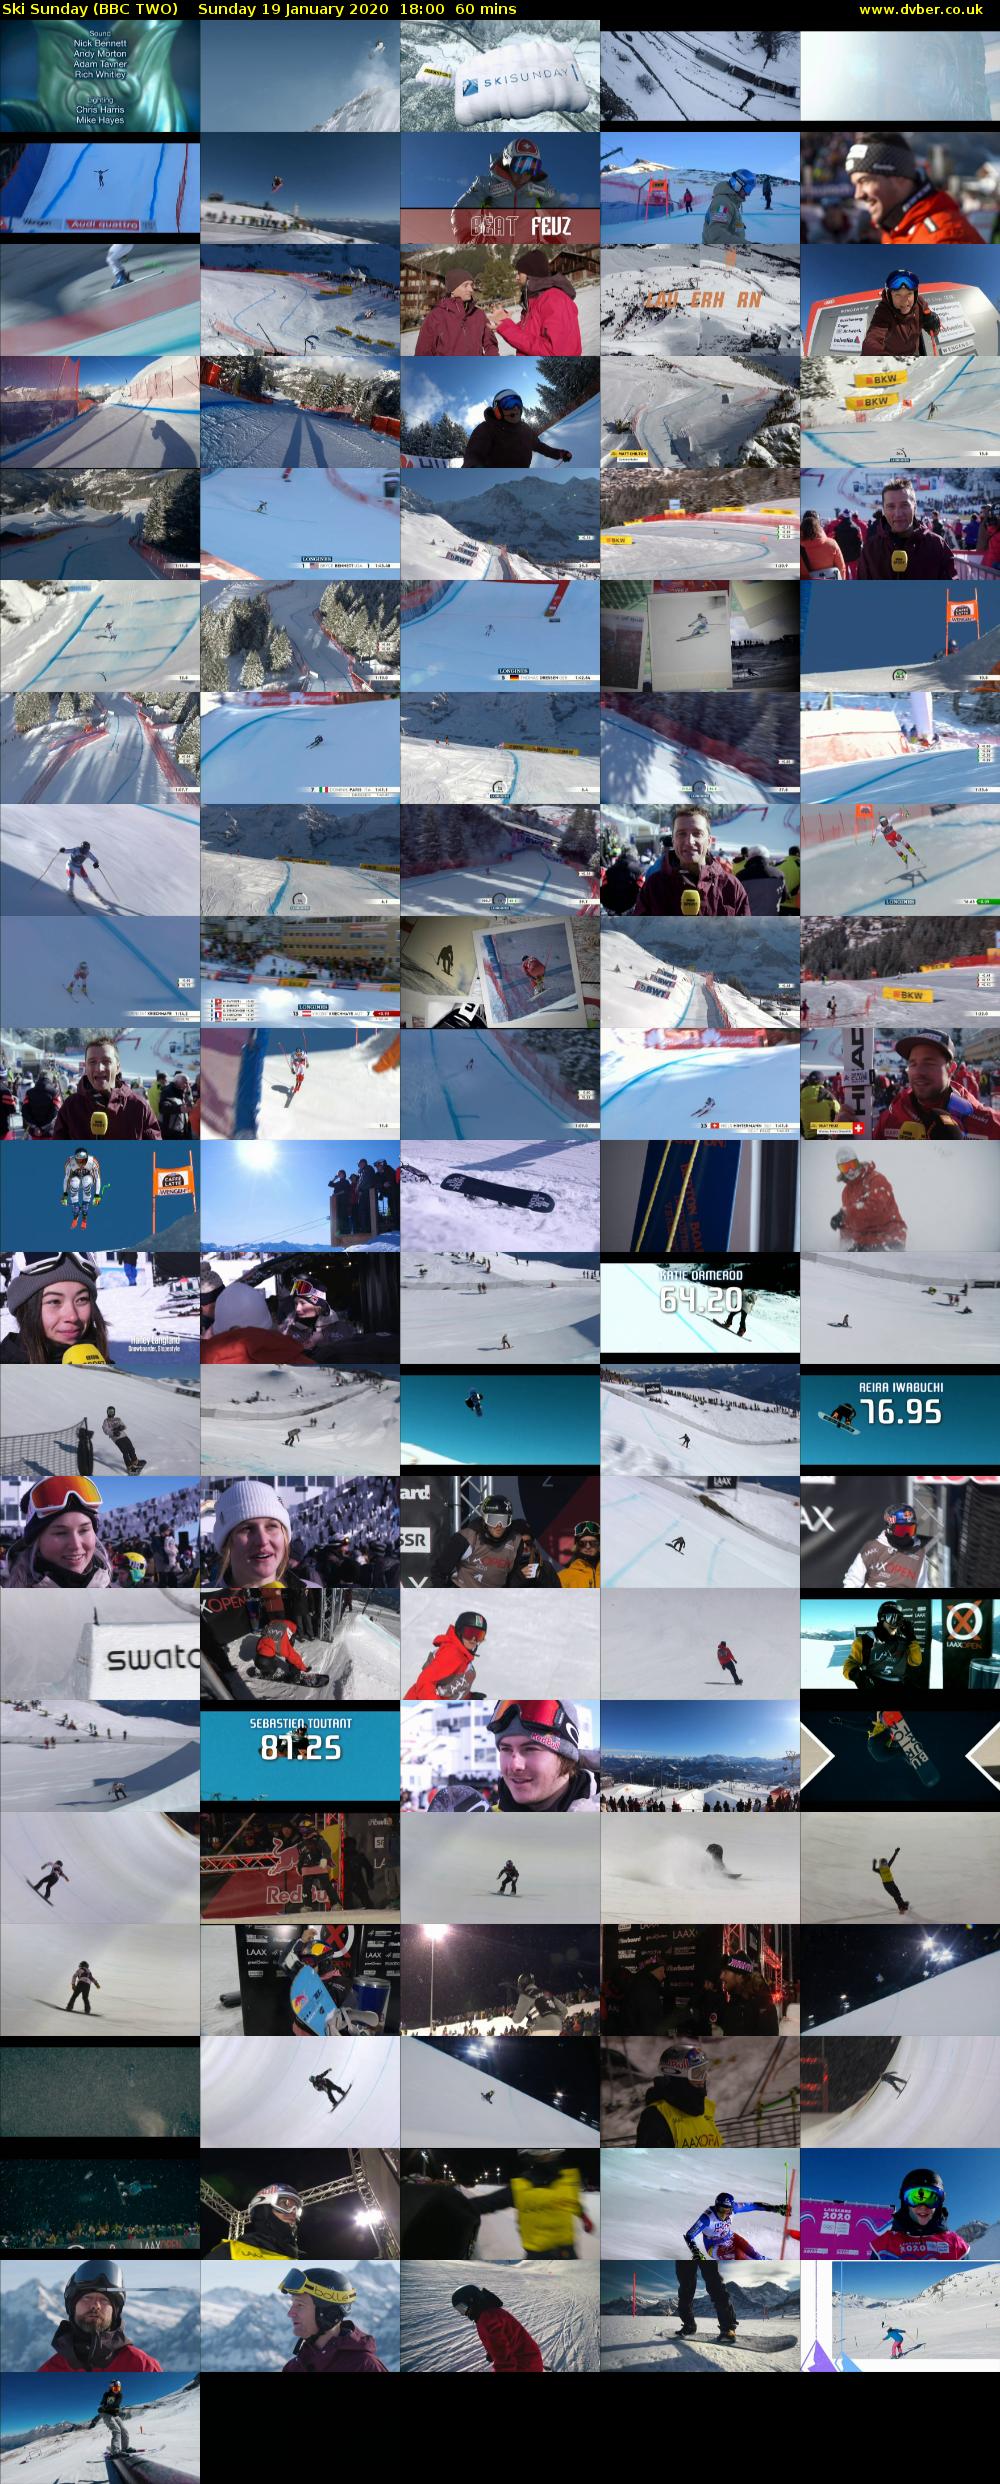 Ski Sunday (BBC TWO) Sunday 19 January 2020 18:00 - 19:00